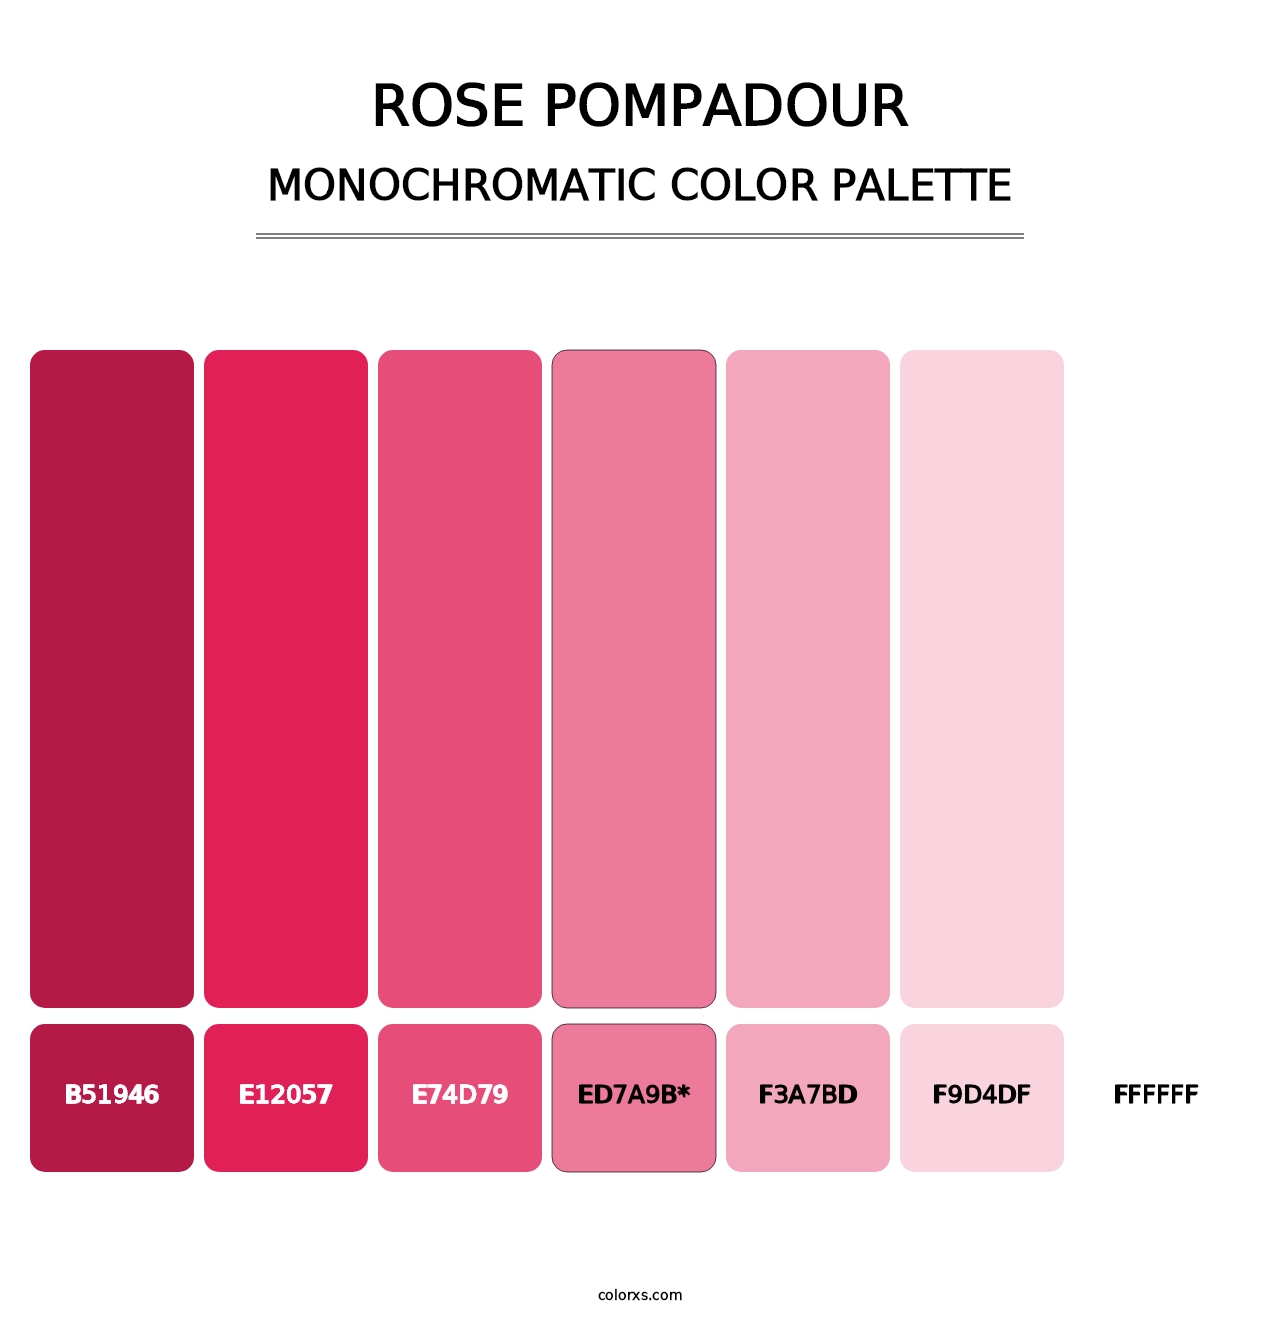 Rose Pompadour - Monochromatic Color Palette